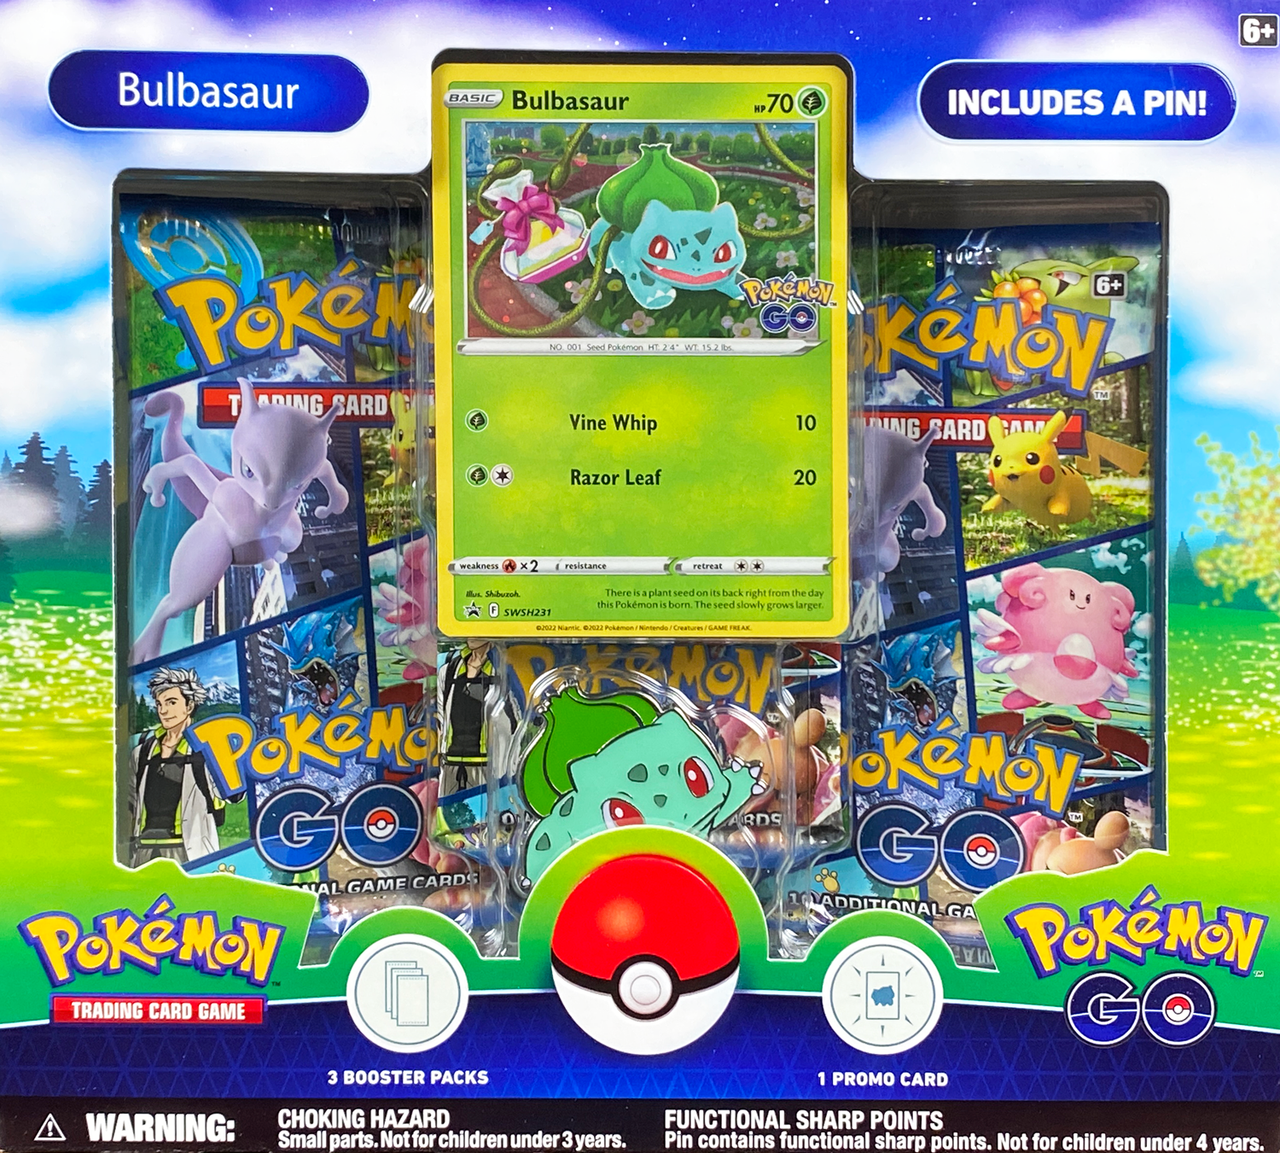 Pokémon TCG: Pokémon GO Pin Collection (Bulbasaur)